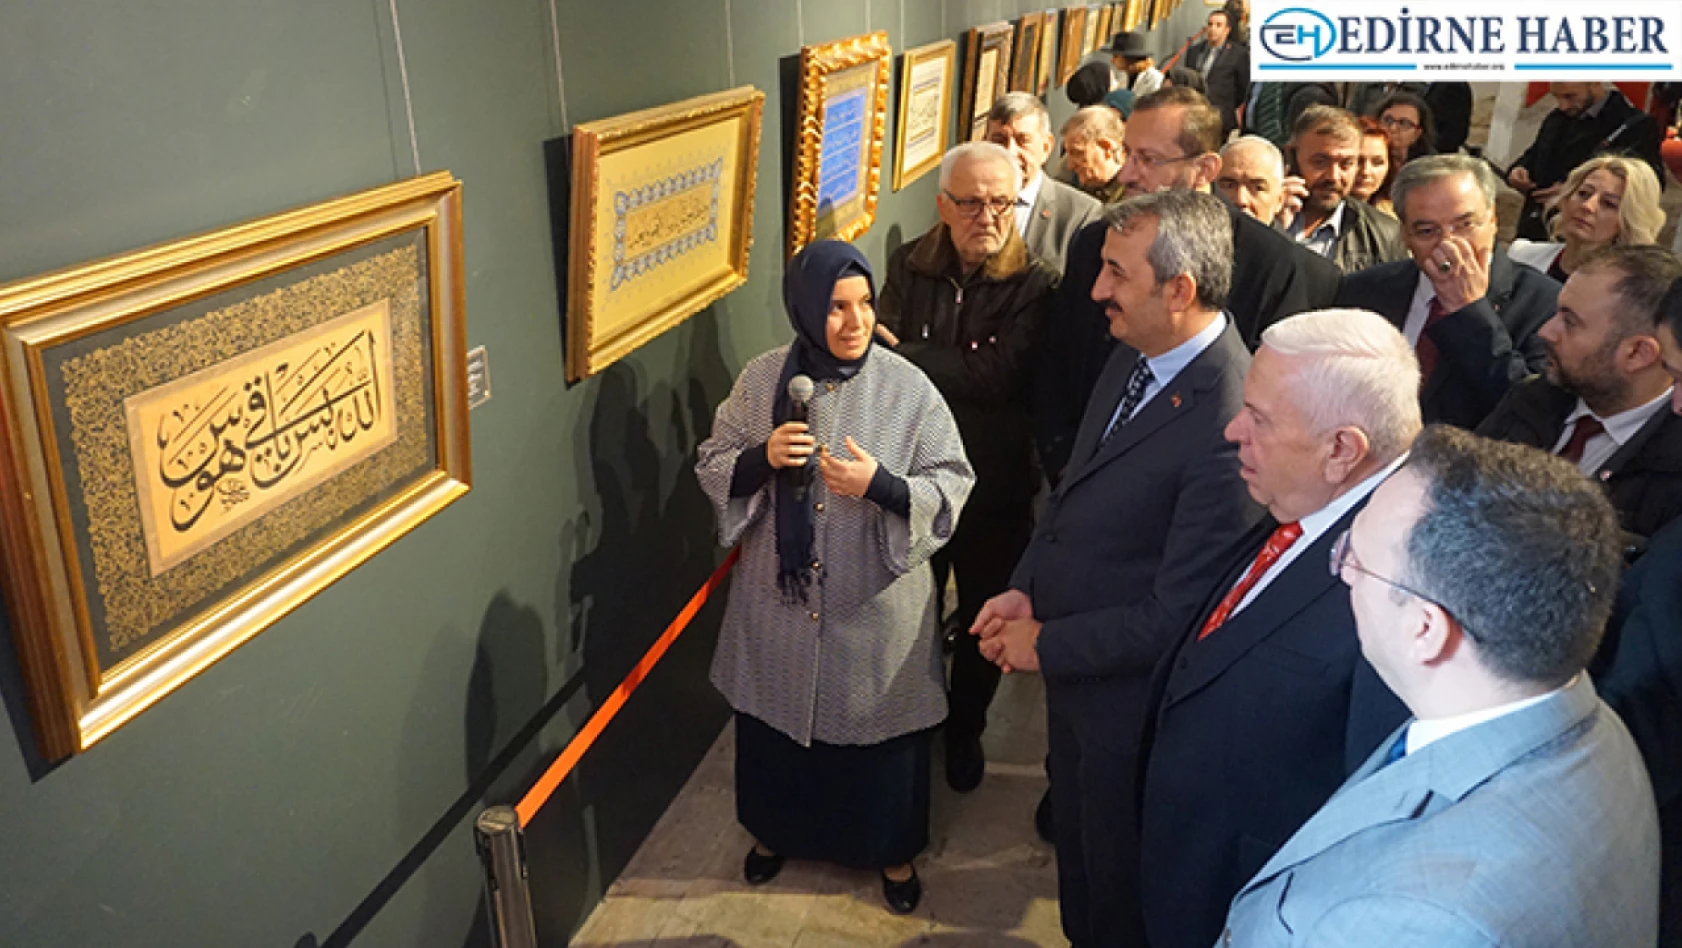 Yıldız Holding'in 'Konuşan Yazılar' sergisi Edirne'de ziyarete açıldı